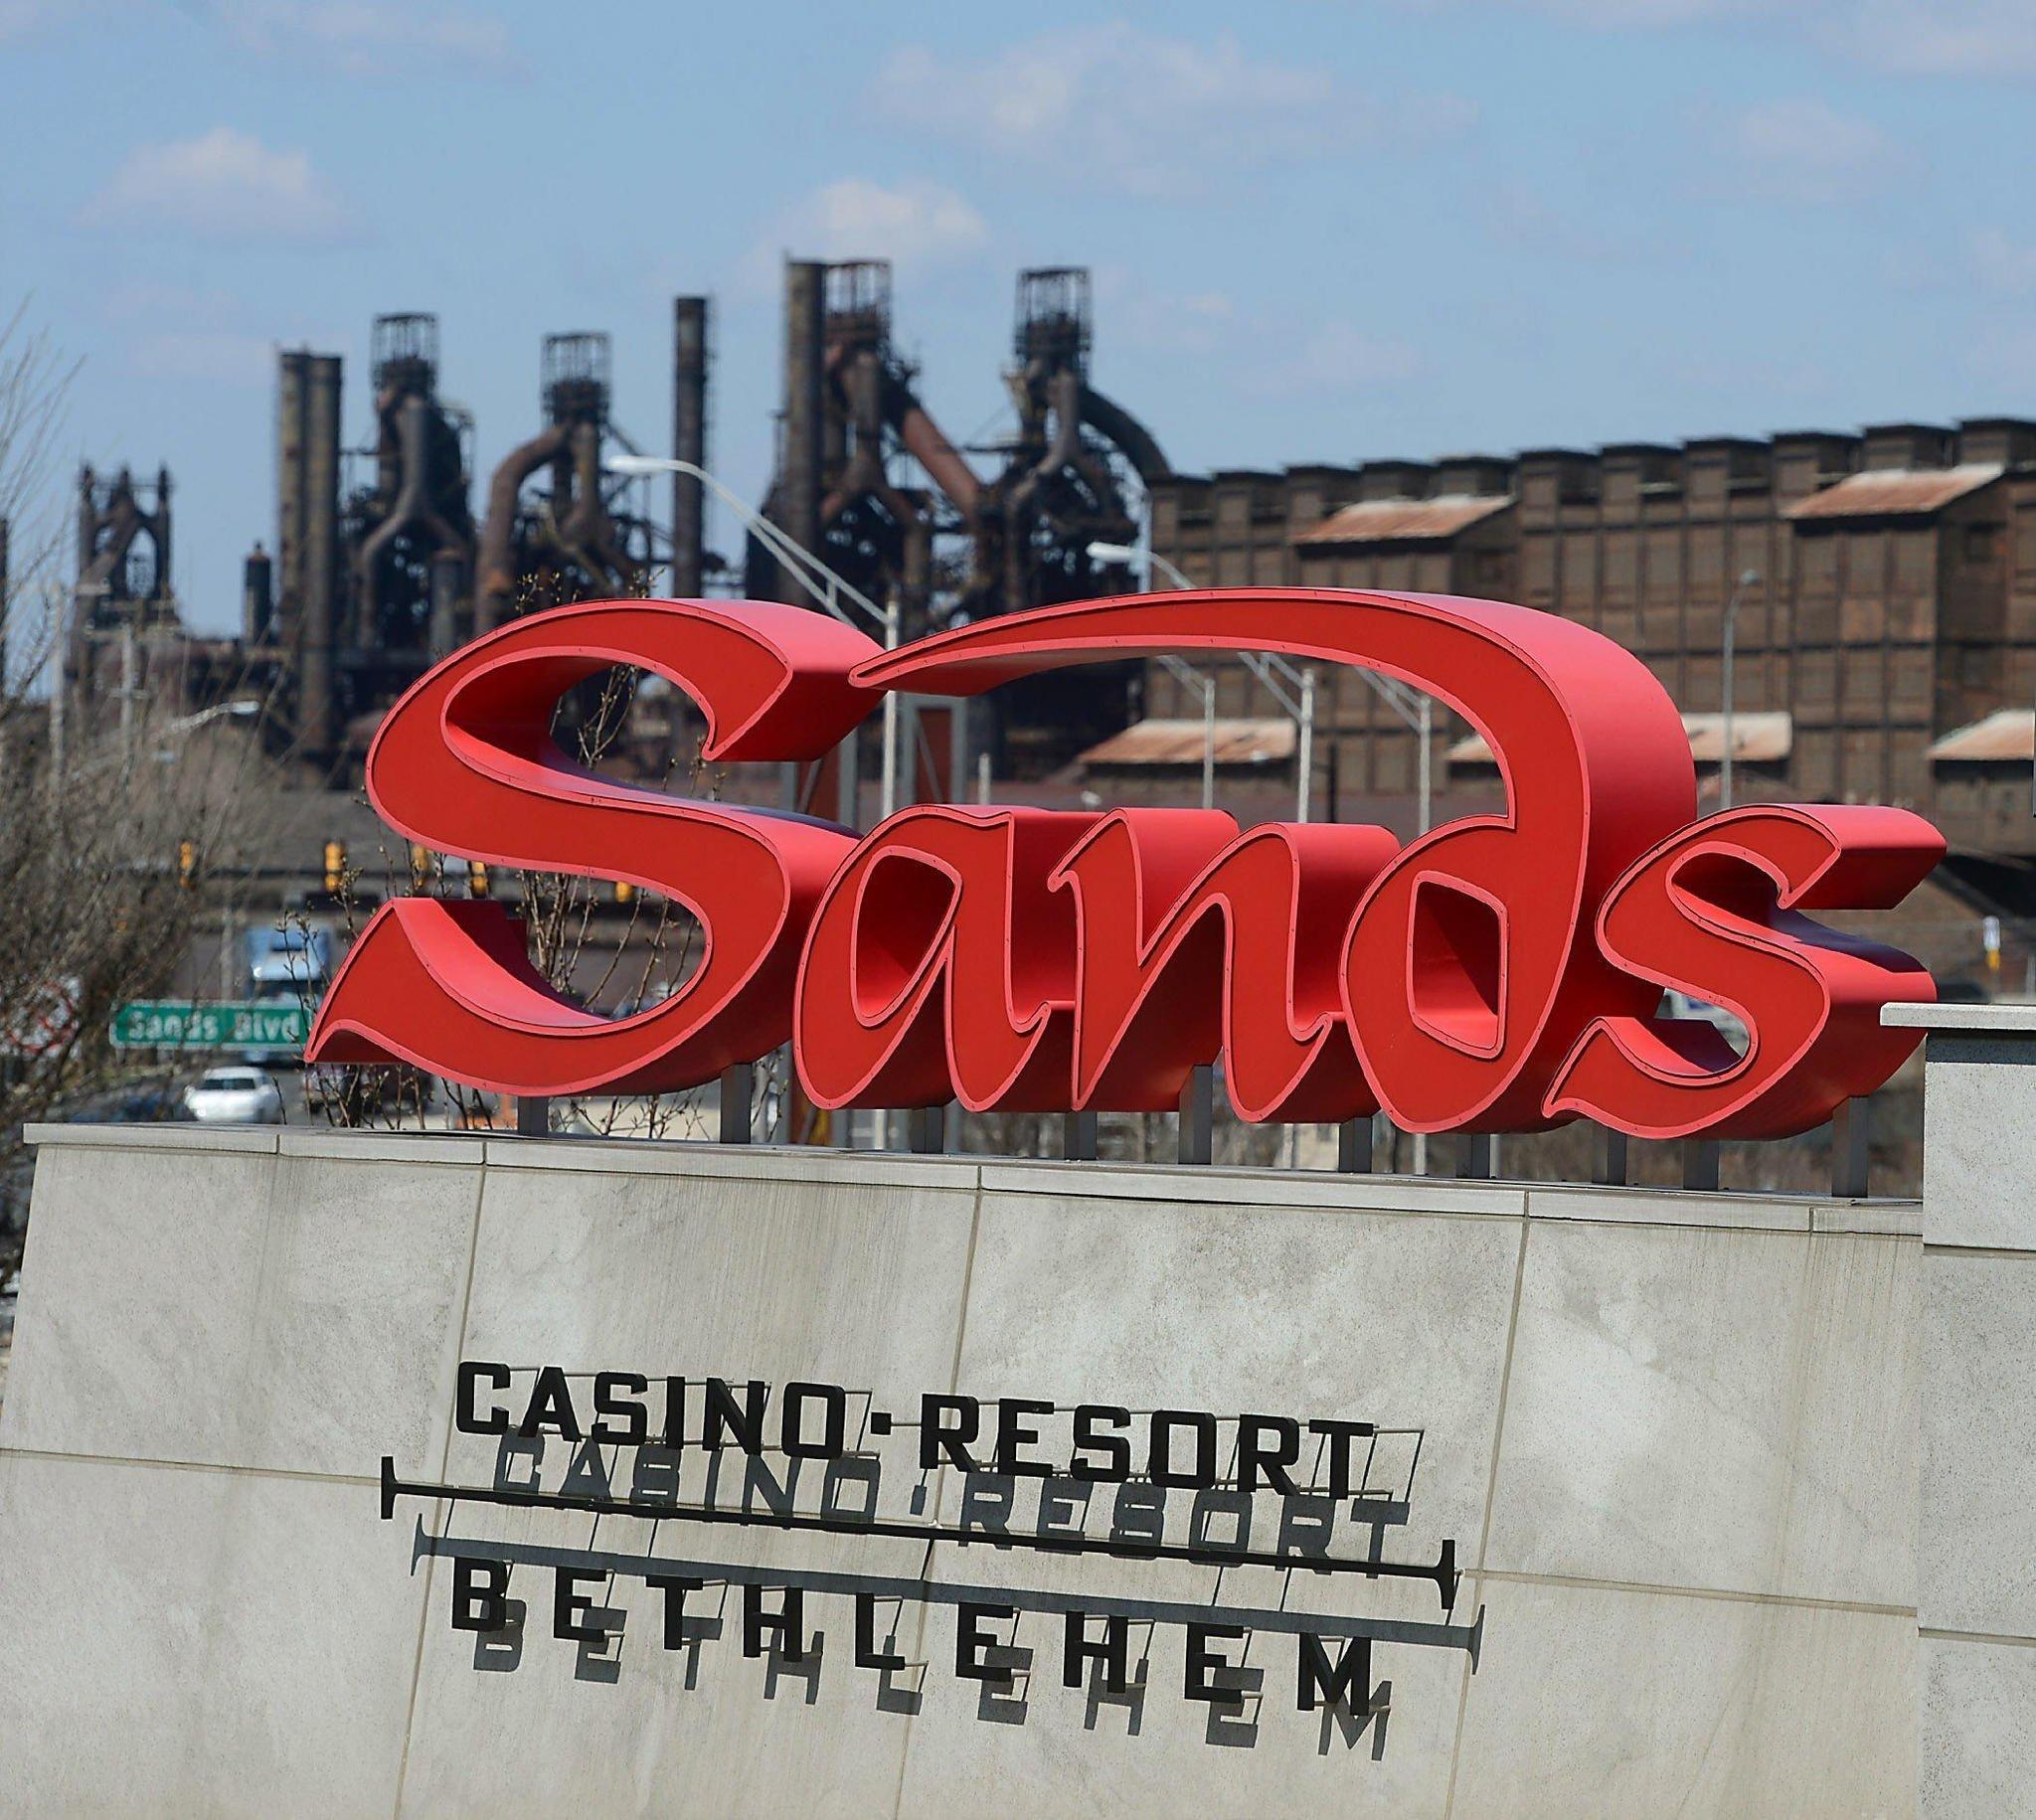 Sands Bethlehem casino table games rake in $19 million - Allentown Morning Call